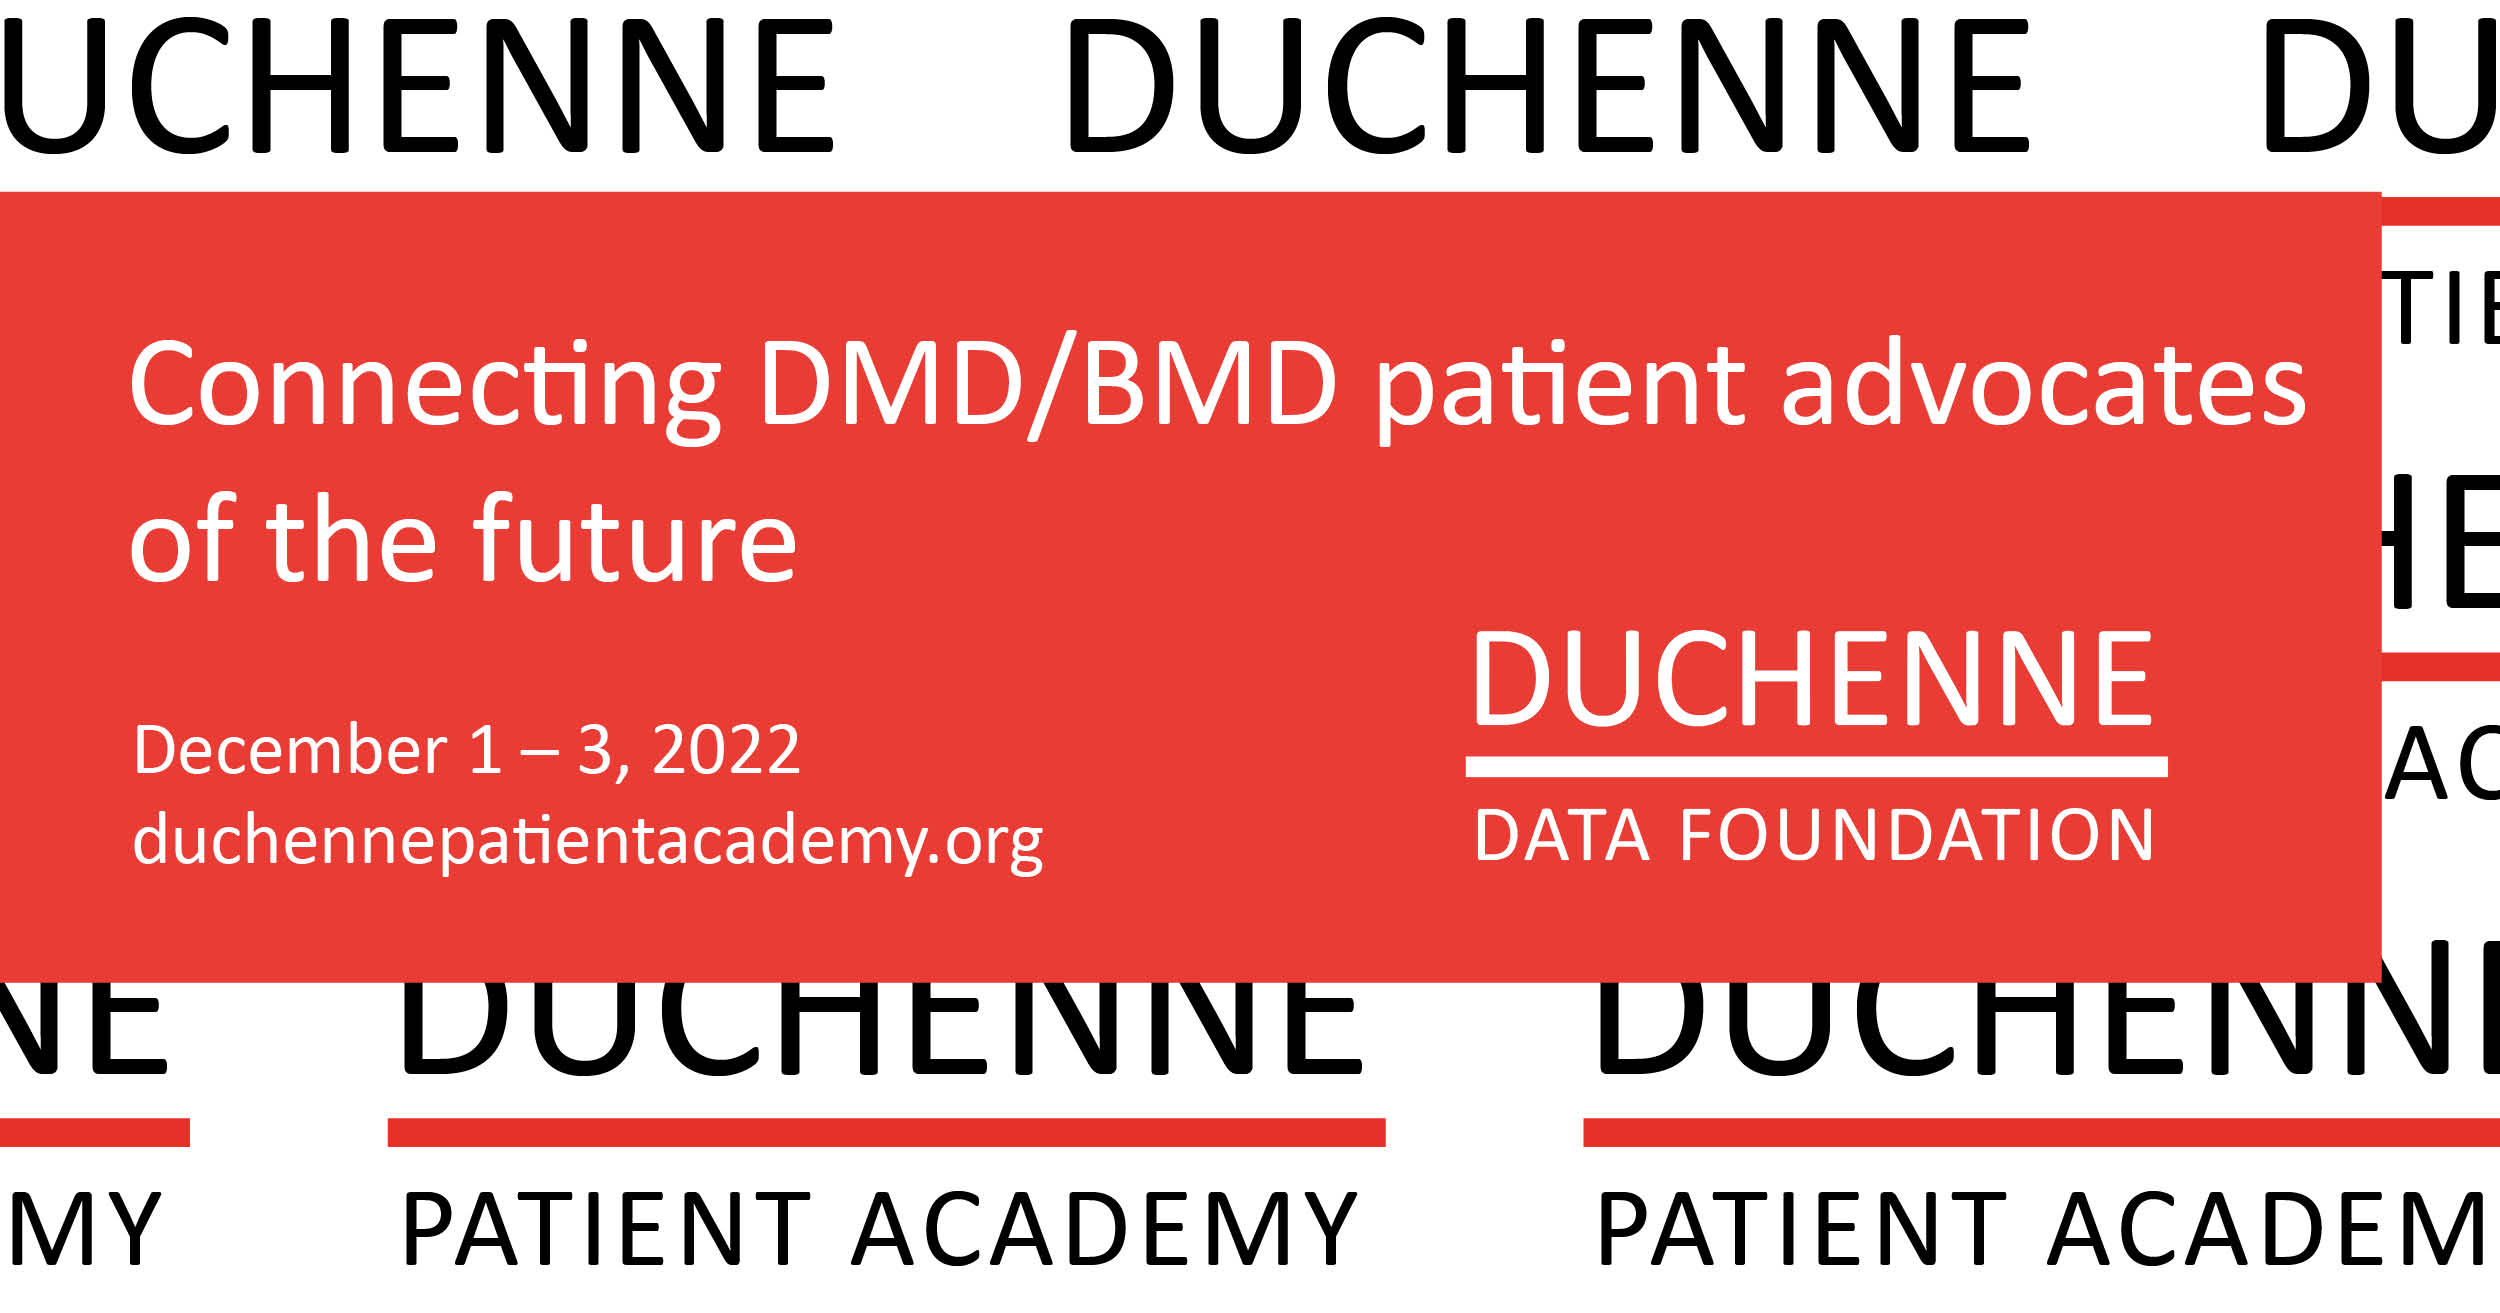 Duchenne Patient Academy 2022